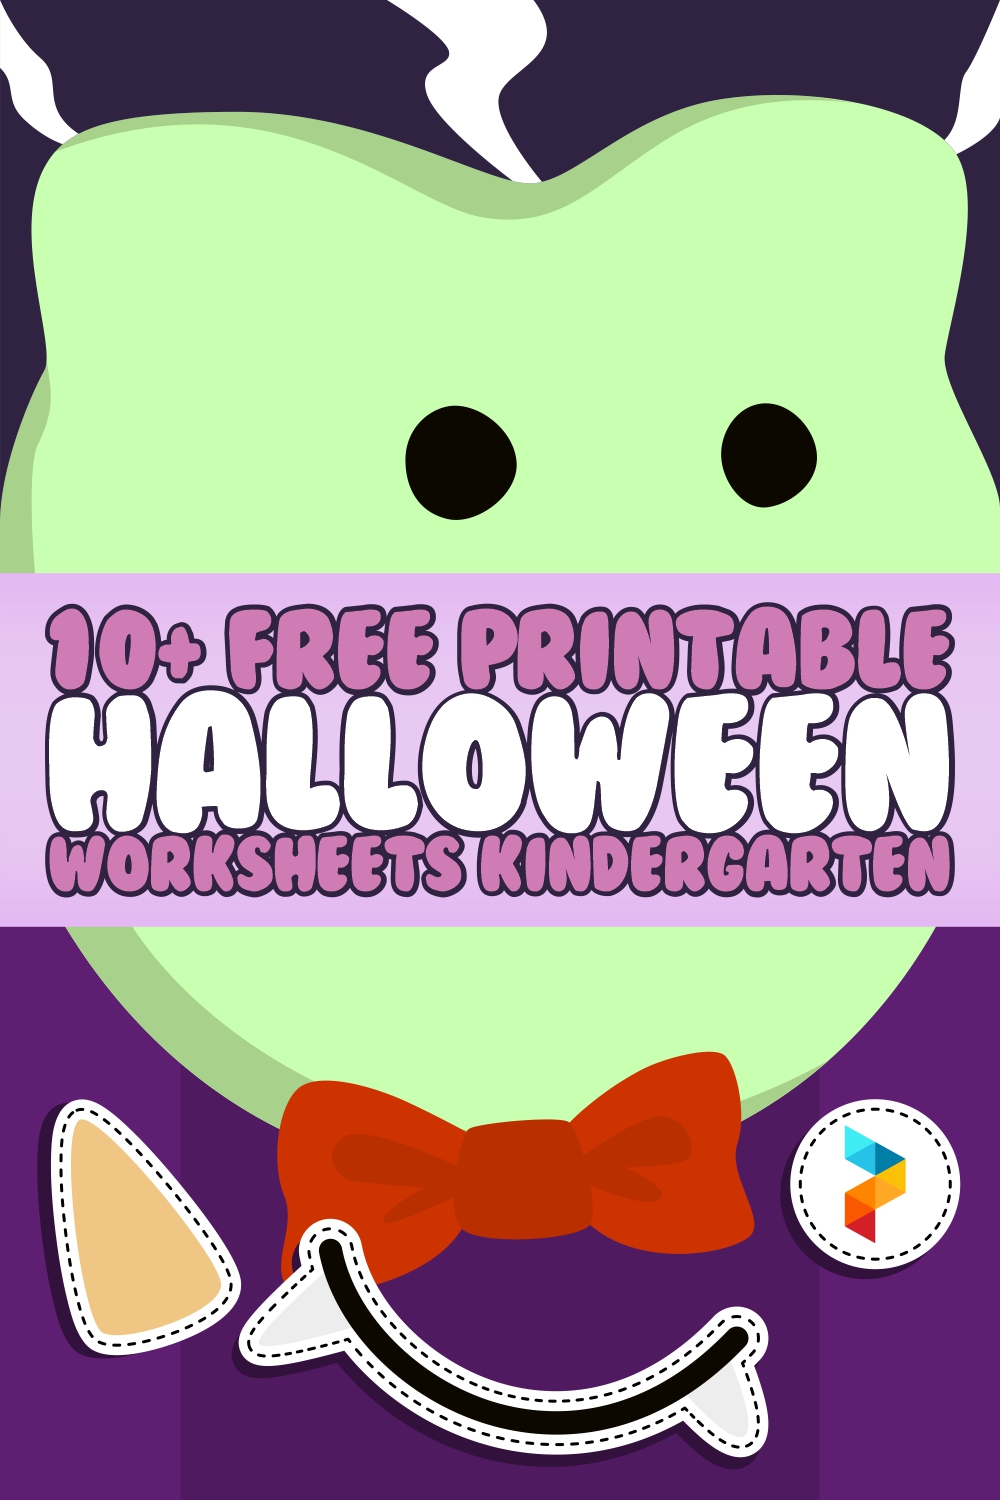 Printable Halloween Worksheets Kindergarten